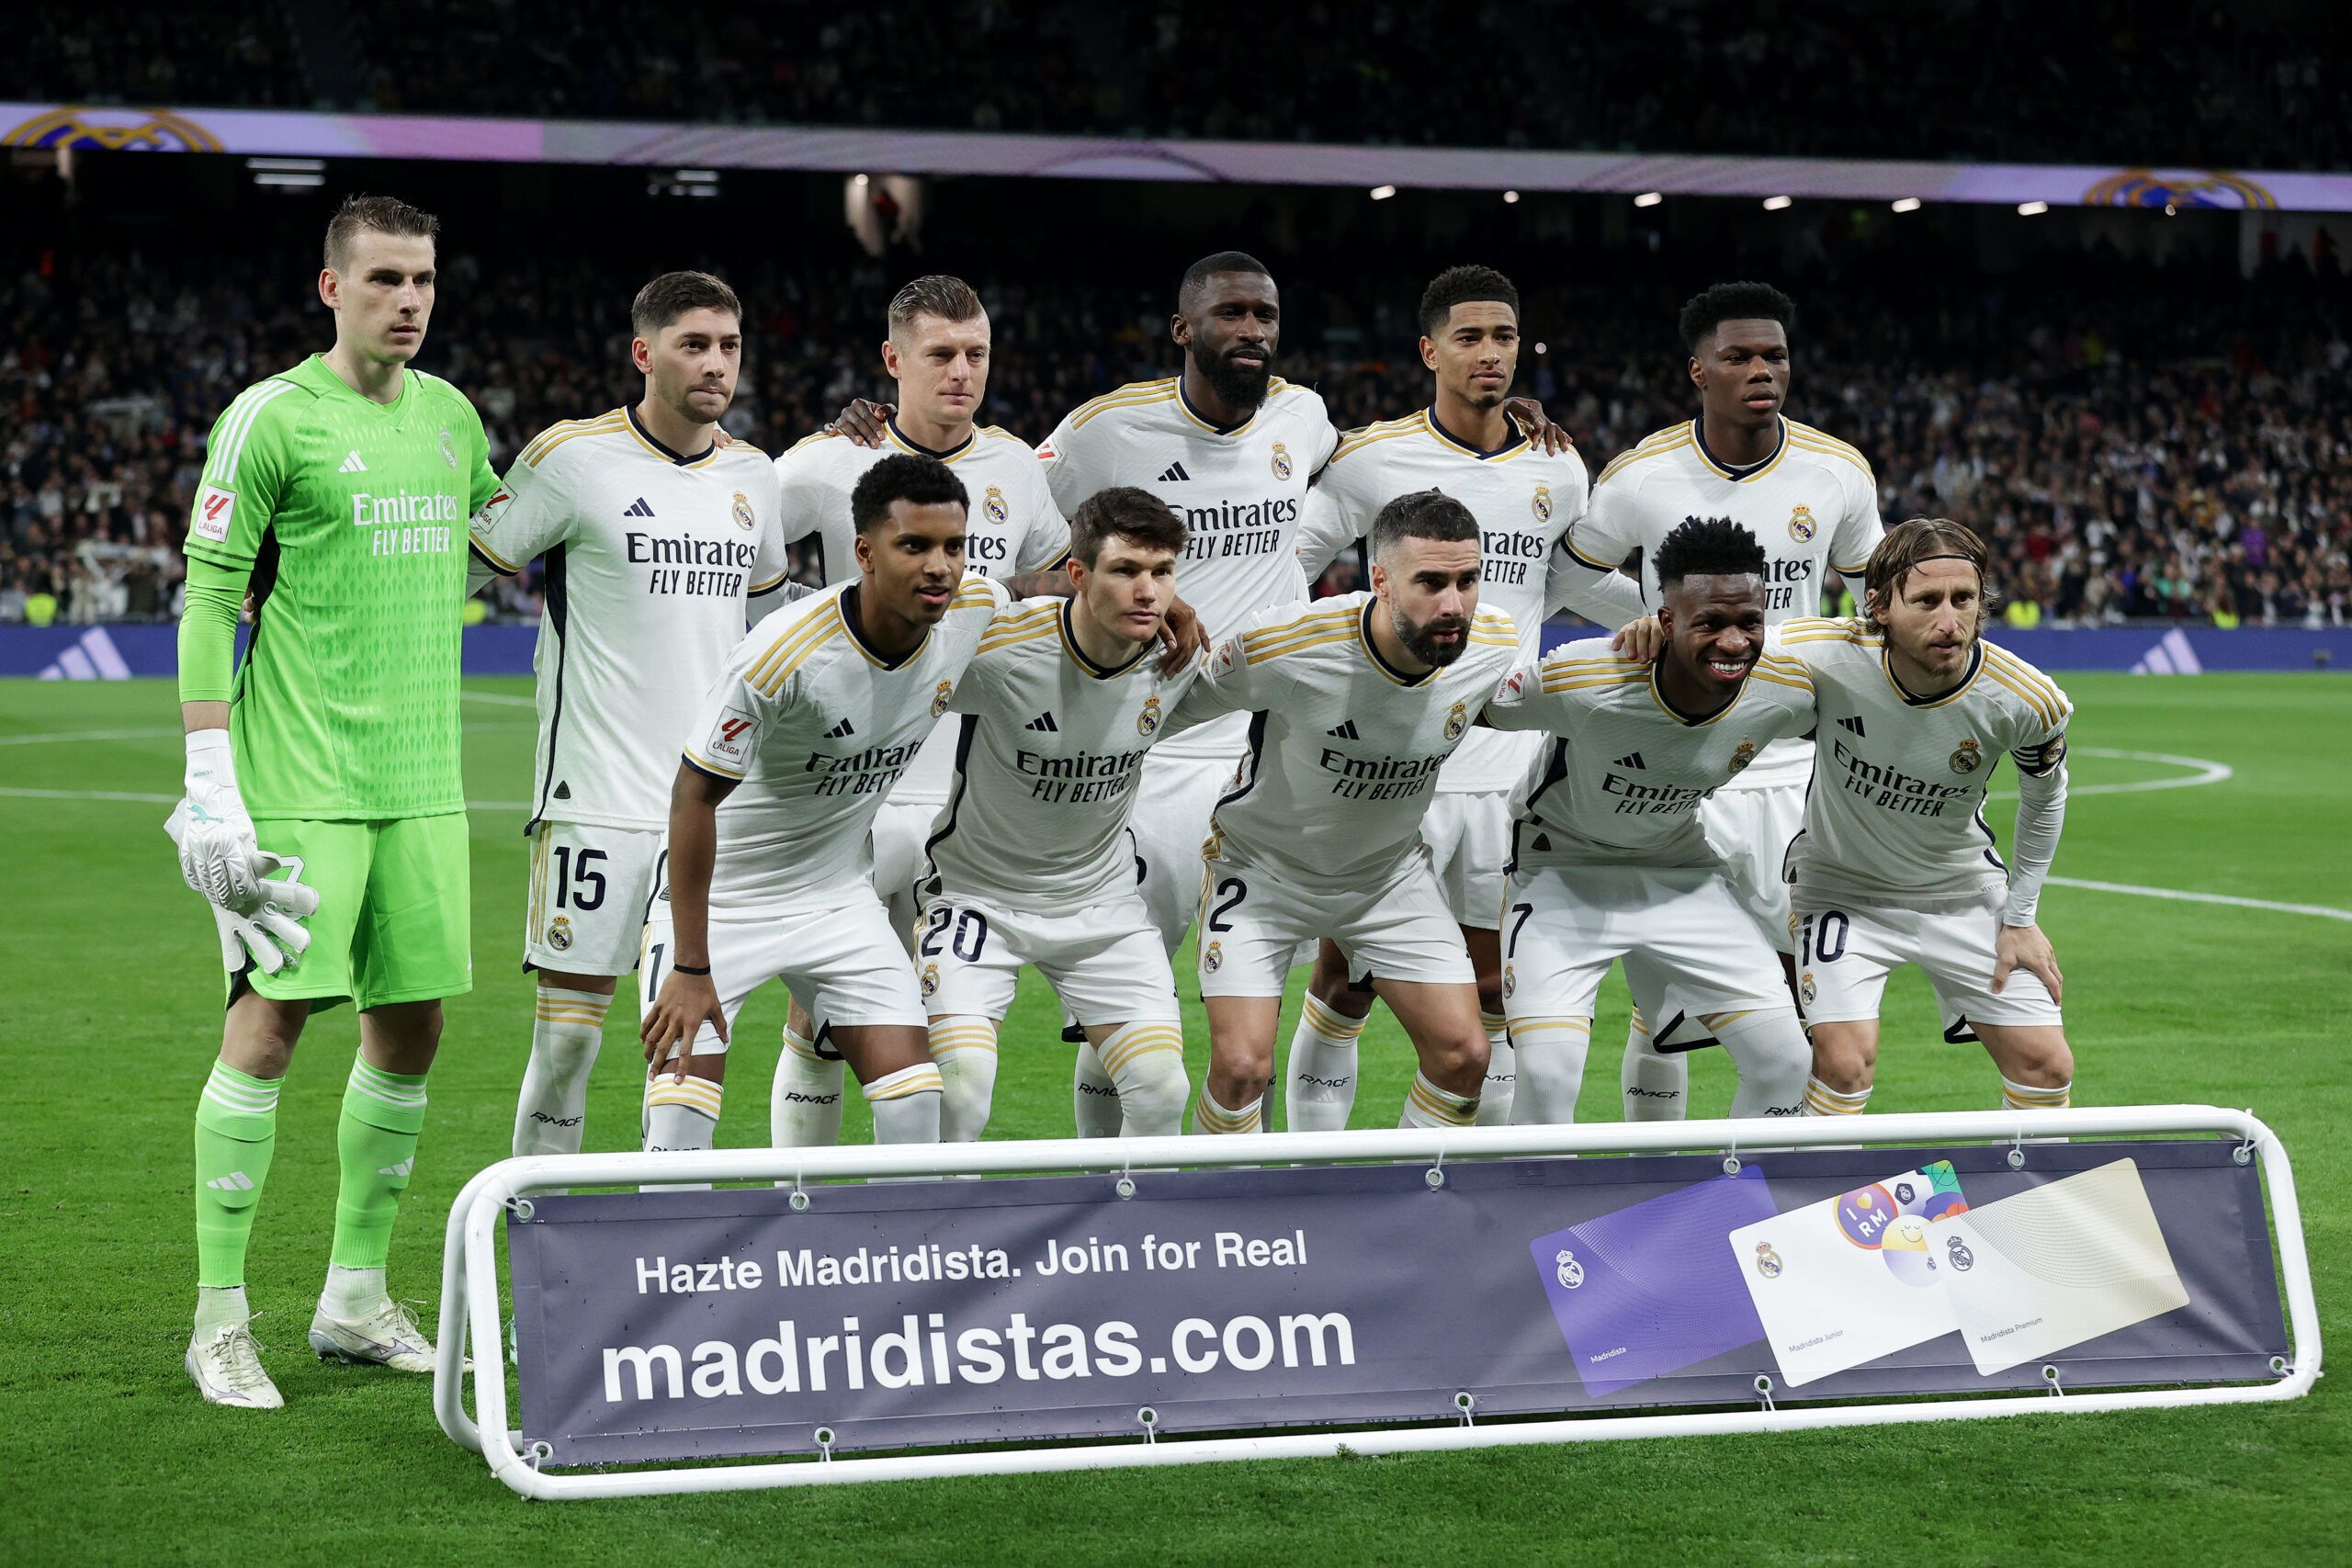 El XI esperado del Real Madrid ante el Atlético en la Supercopa 